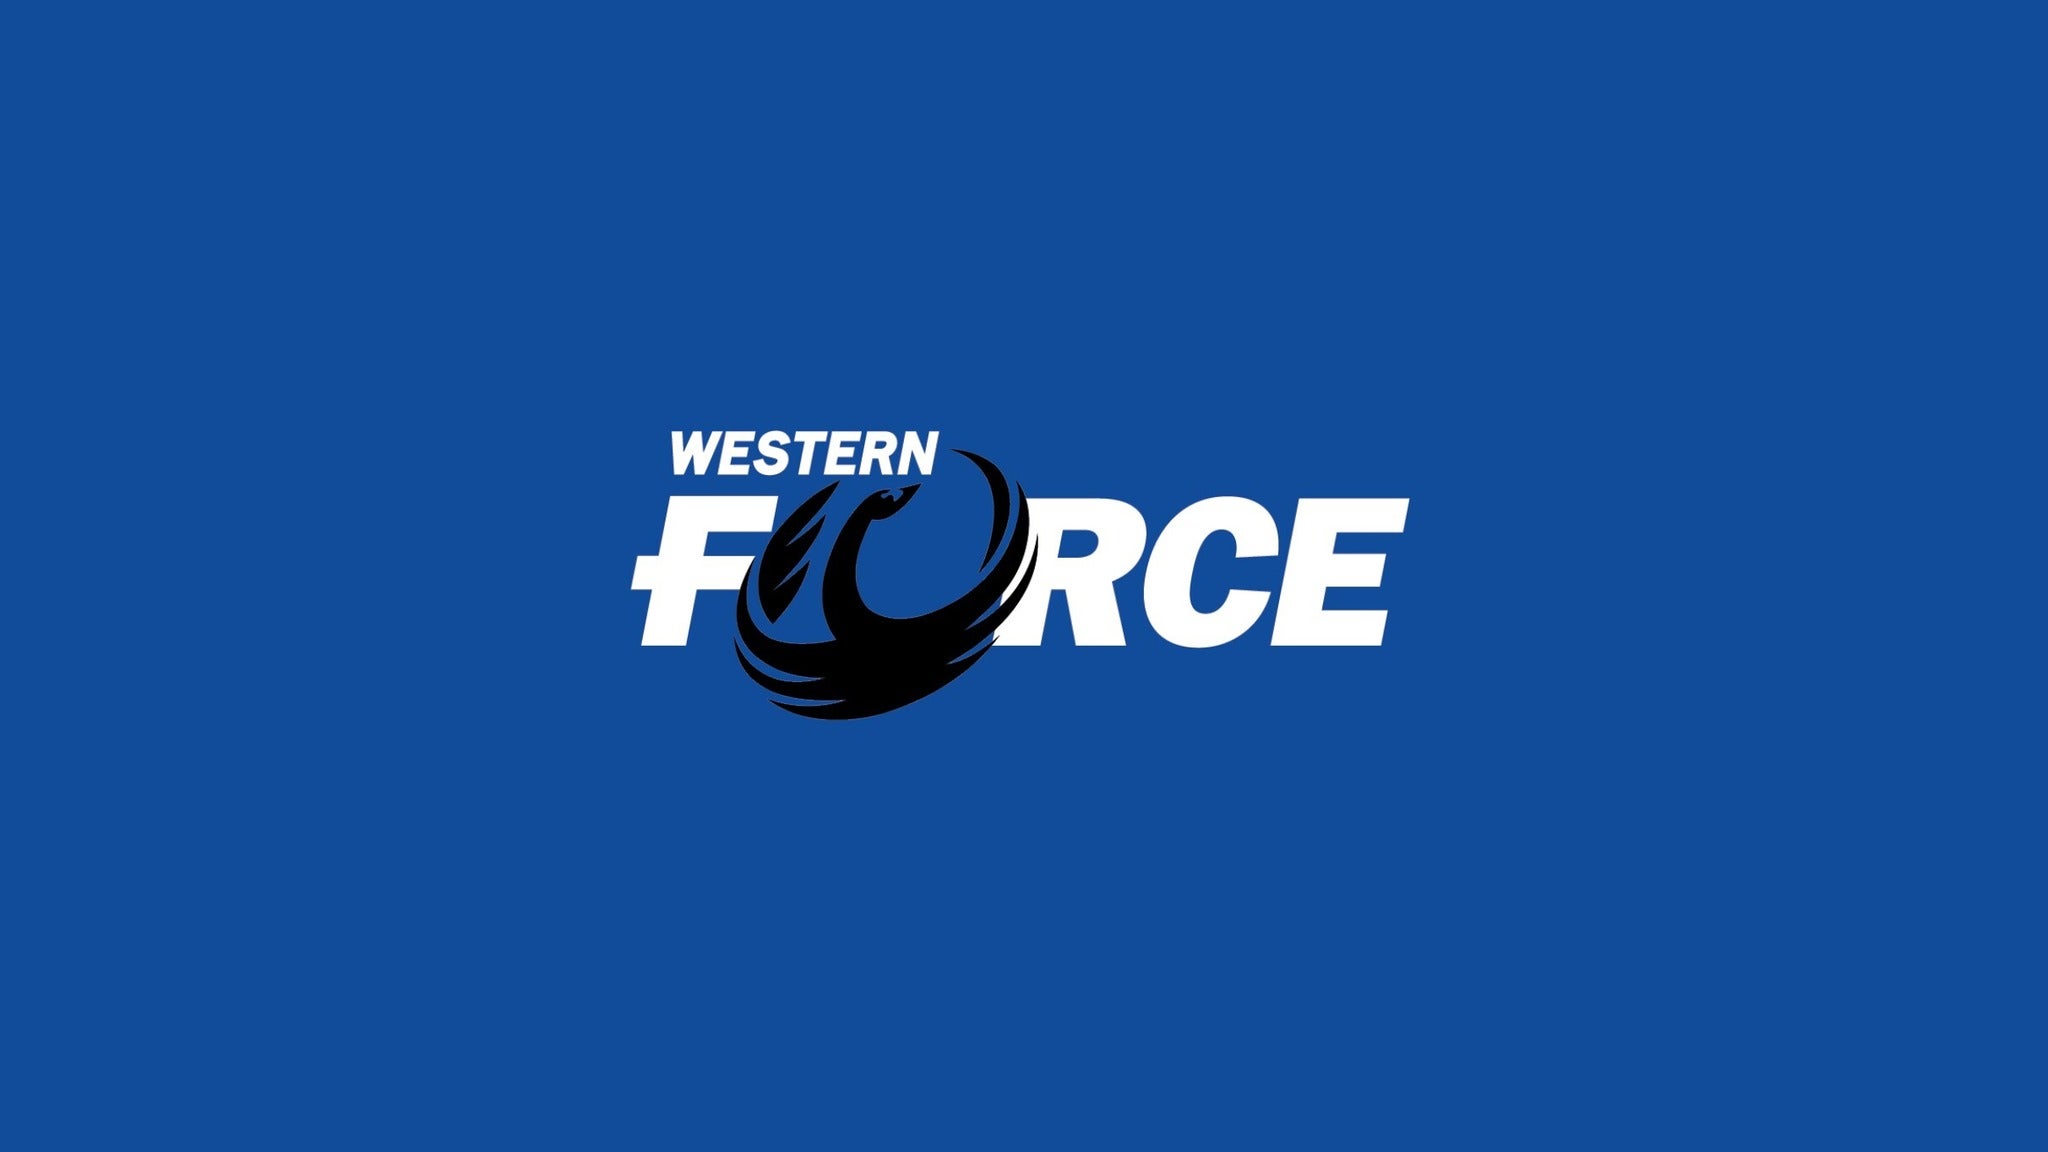 Western Force presale information on freepresalepasswords.com